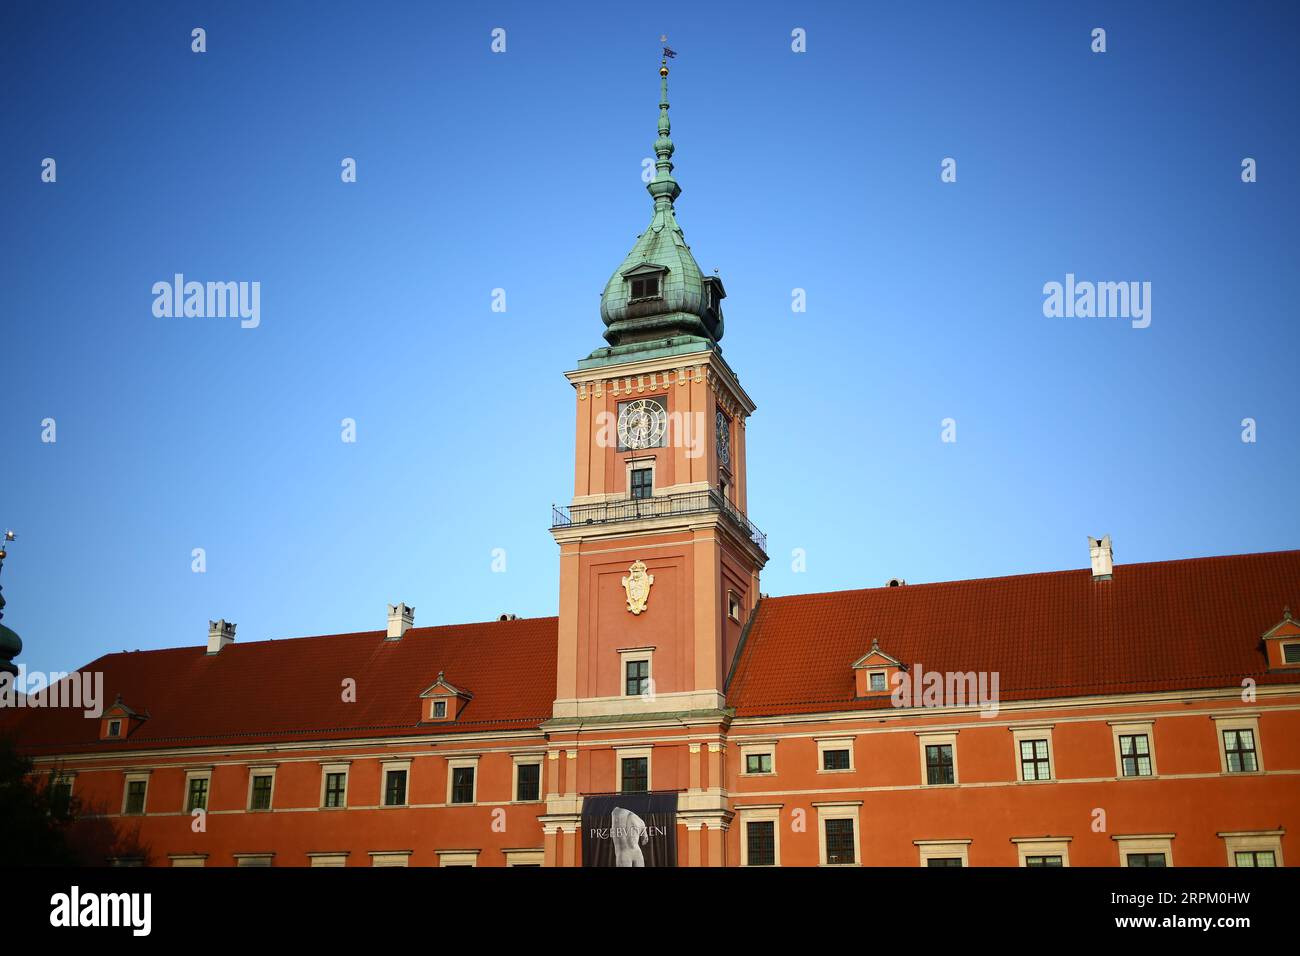 Pologne : Vieille ville de Varsovie à la fin de l'été Banque D'Images